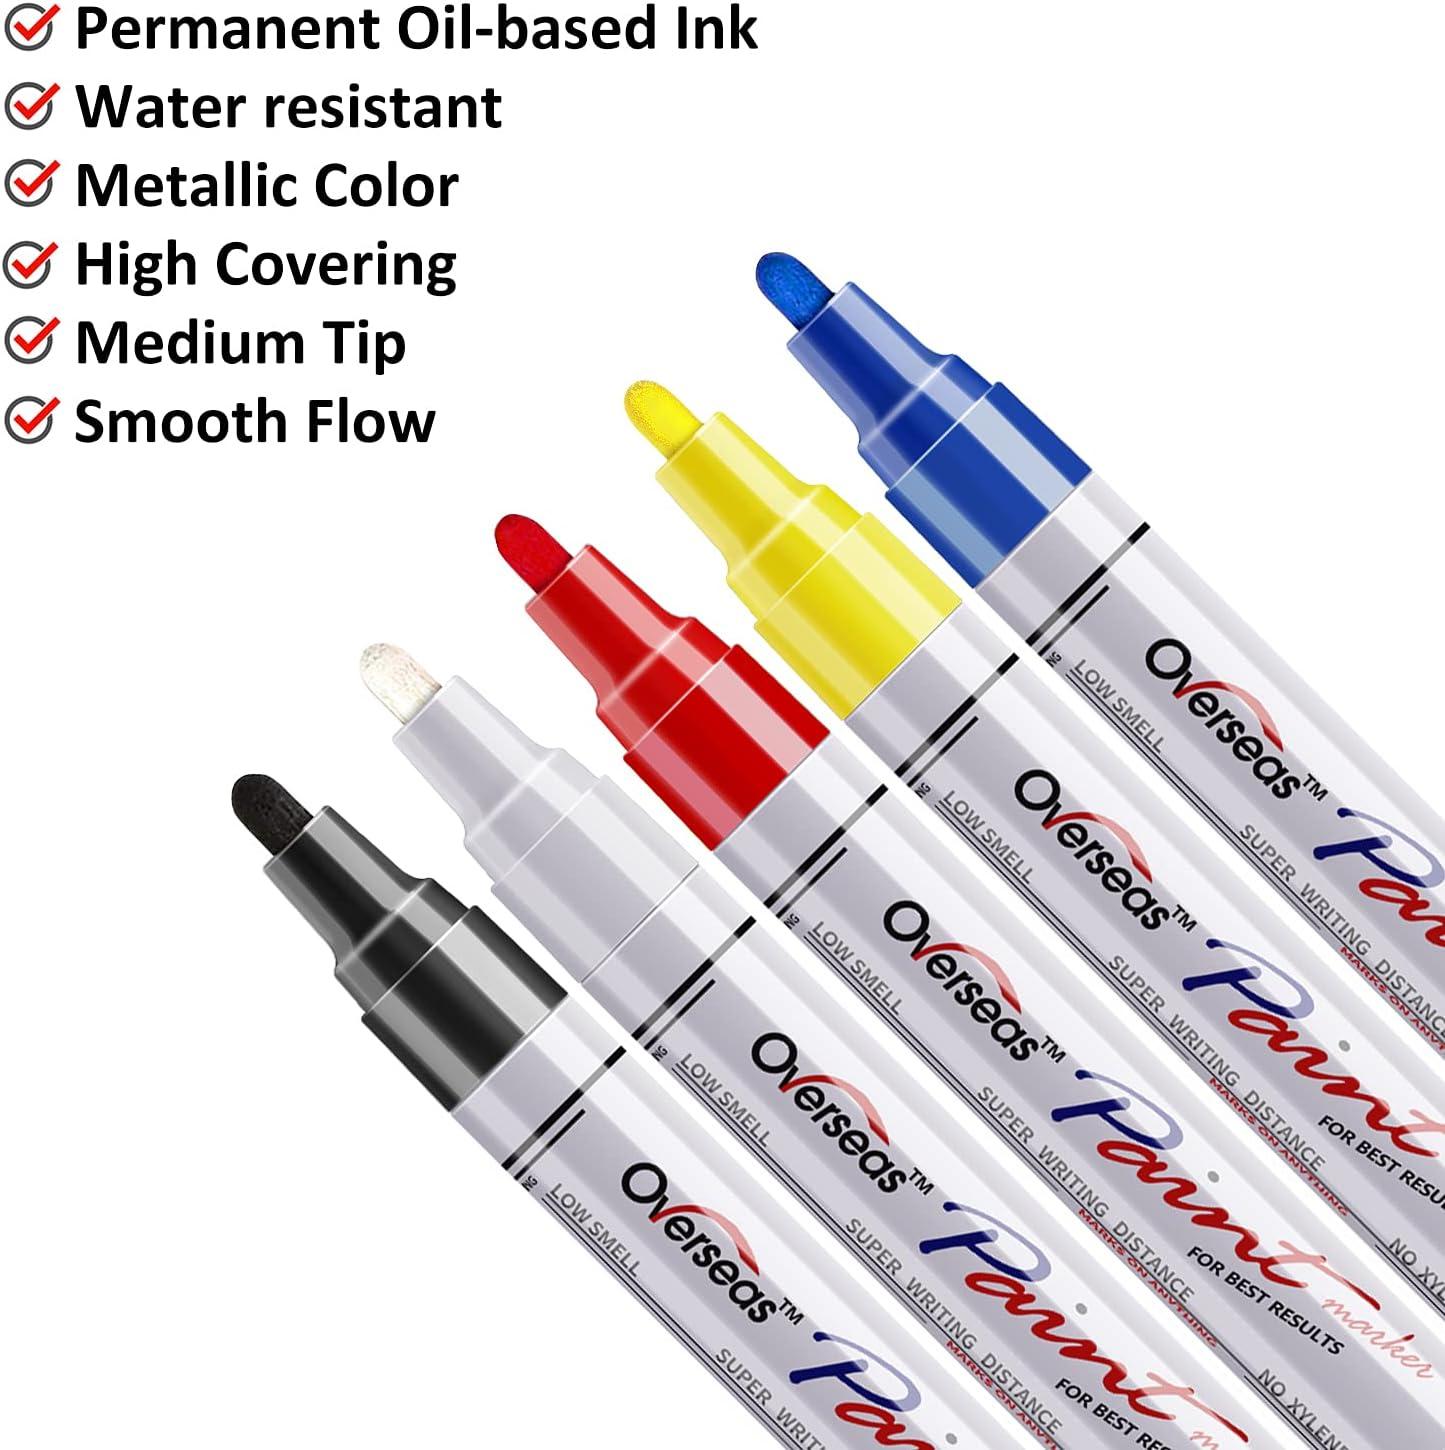 Paint Marker Pens - 5 Colors Permanent Oil Based Paint Markers